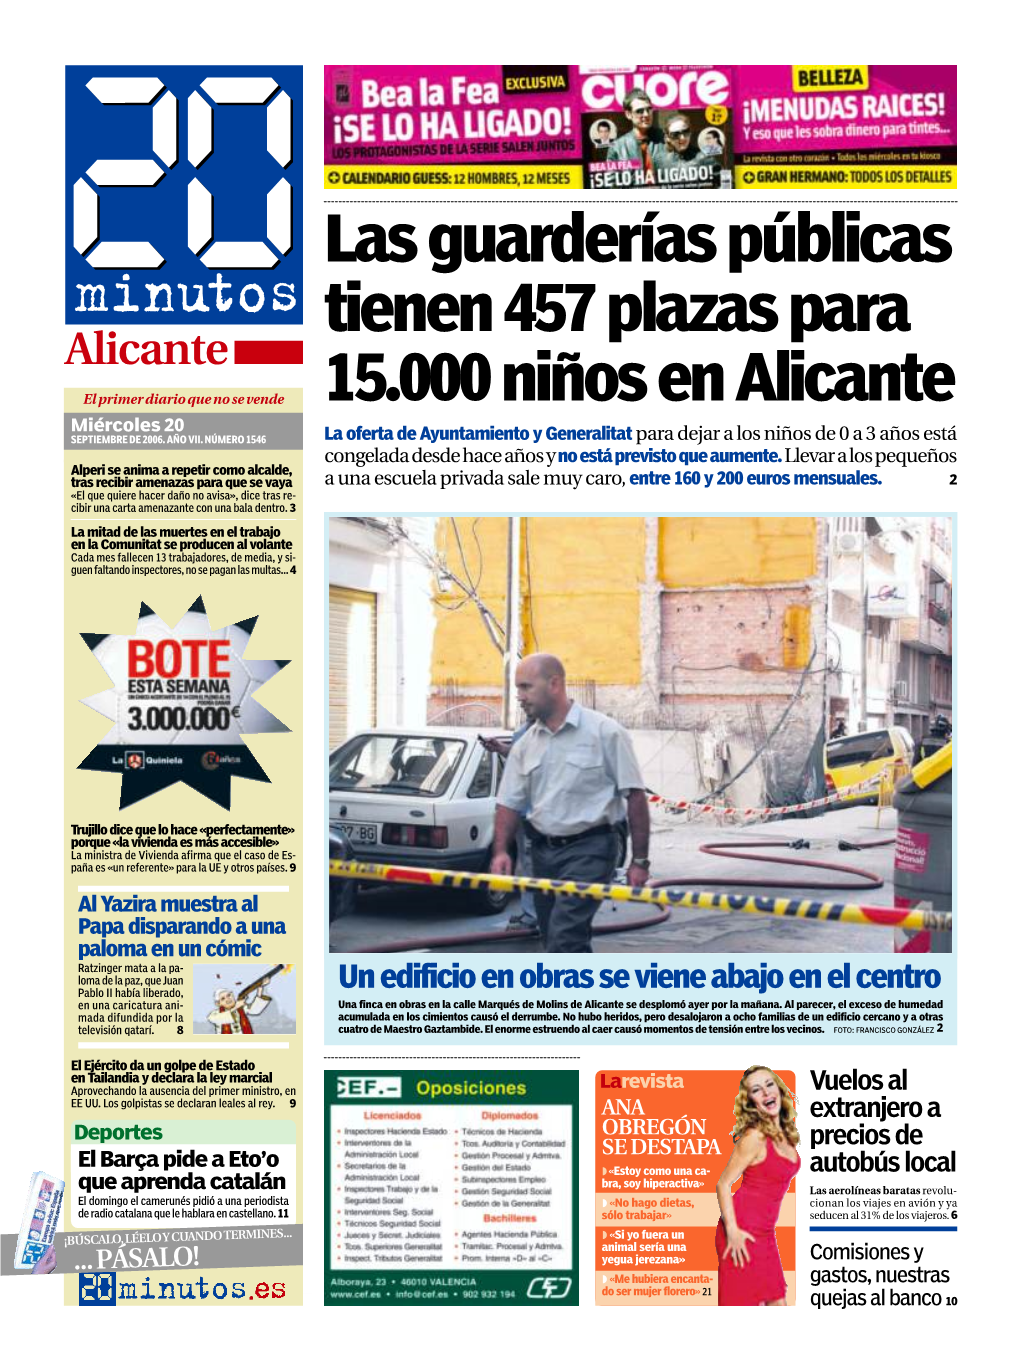 Las Guarderías Públicas Tienen 457 Plazas Para 15.000 Niños En Alicante